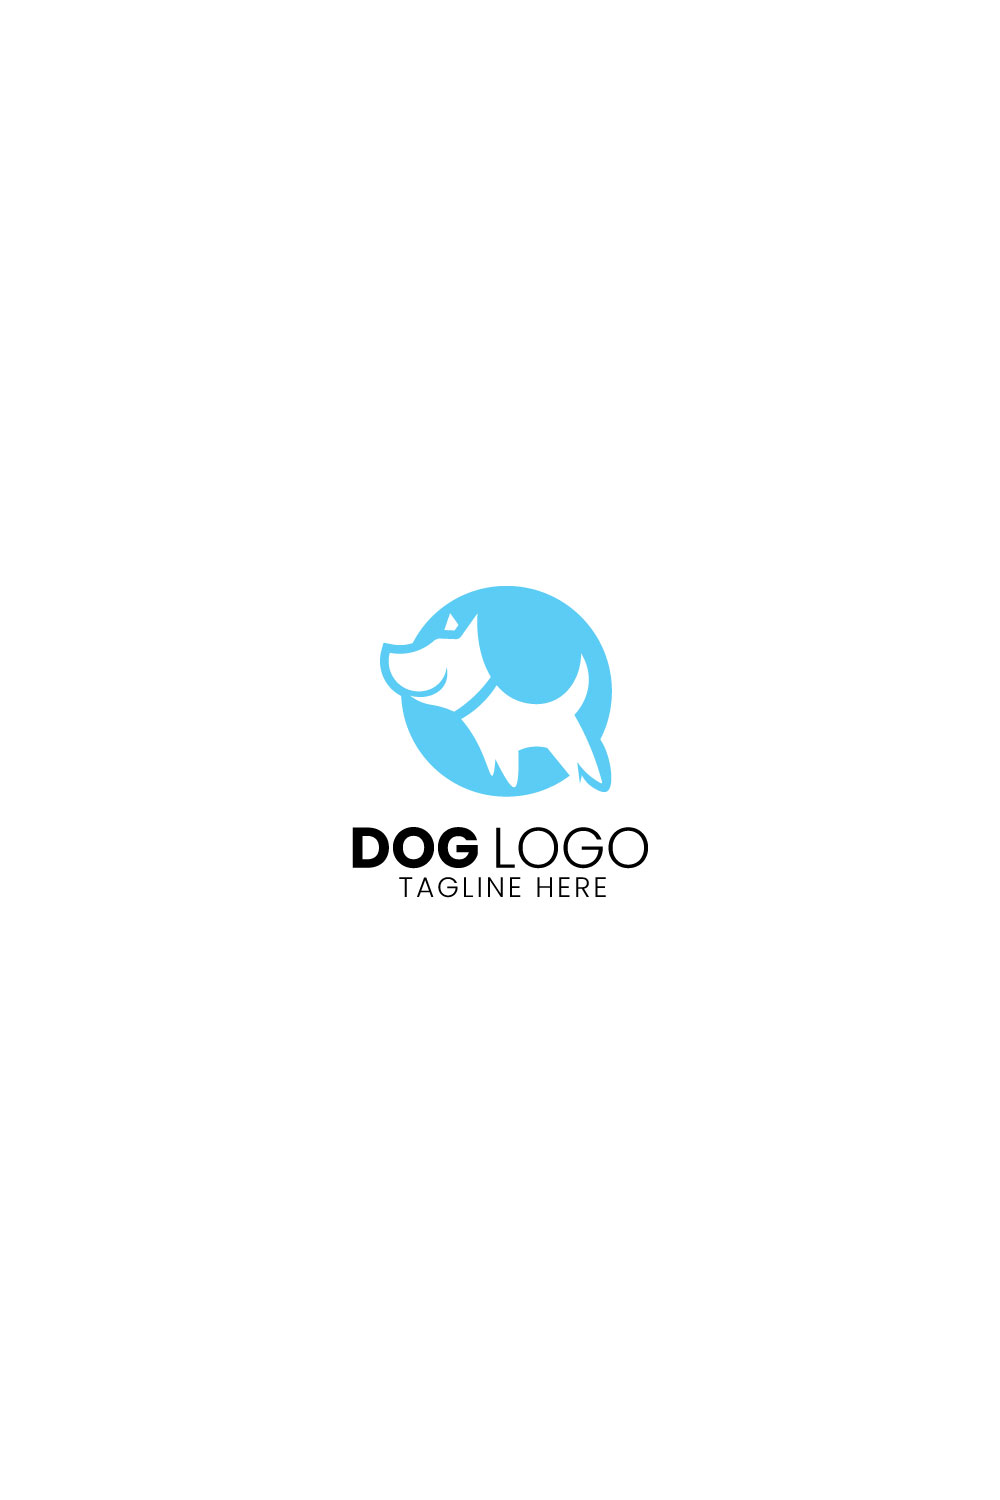 Dog Logo design pinterest preview image.